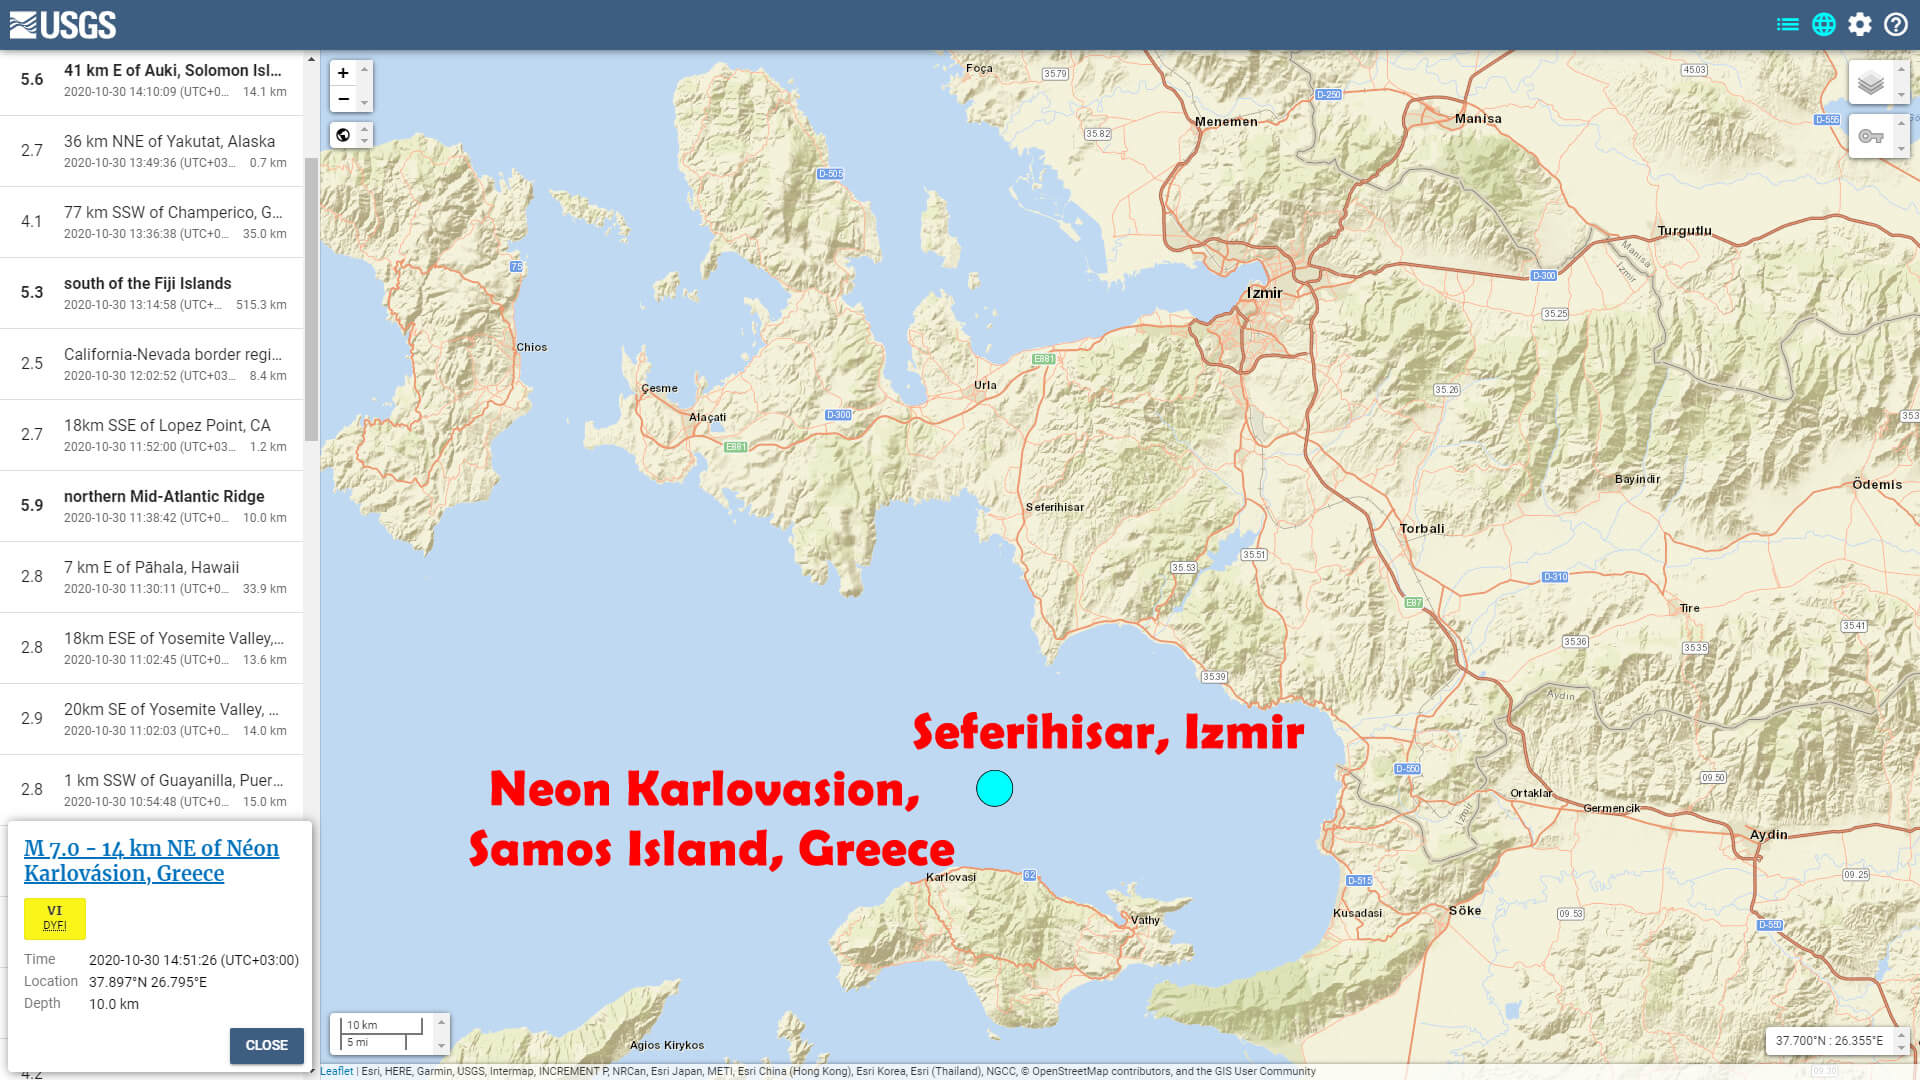 Samos Greece - Seferihisar Izmir - Sep 30 Earthquake Epicenter Map